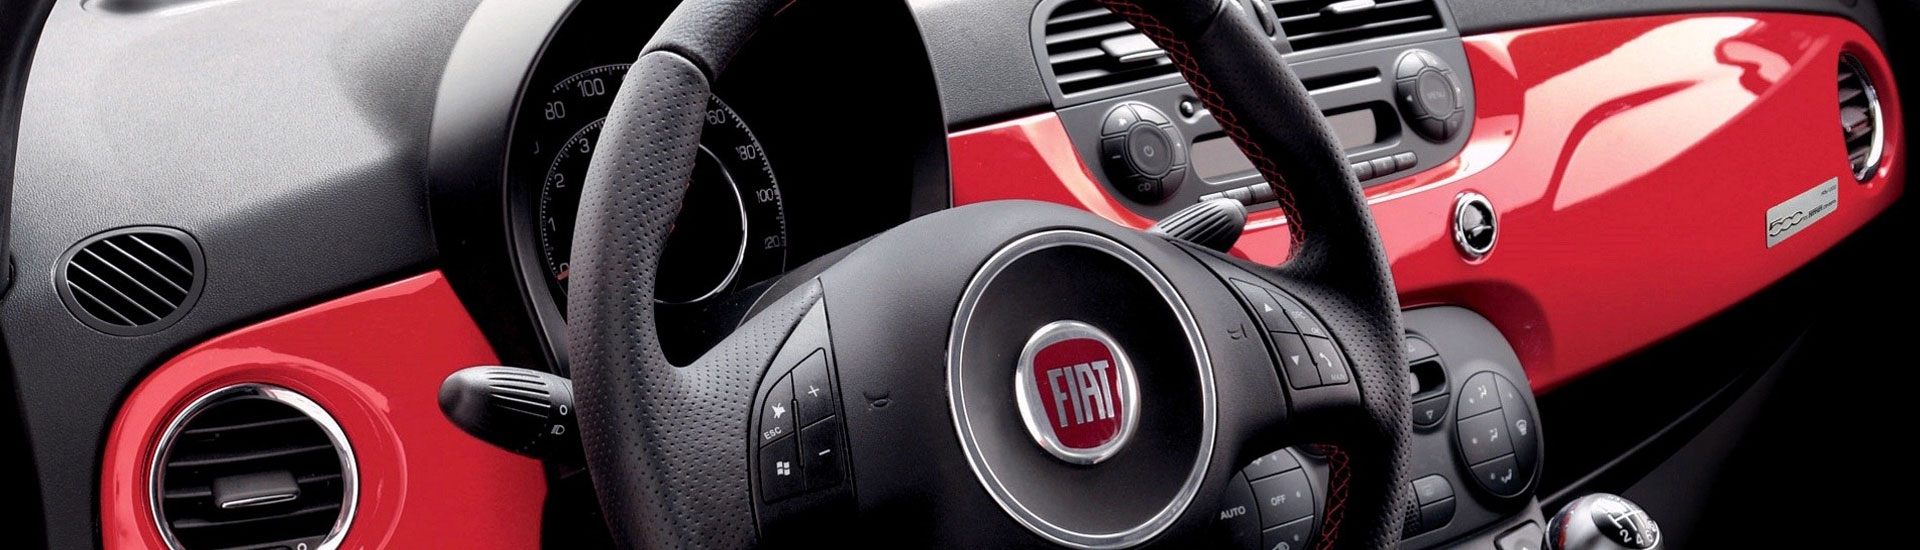 2018 Fiat 500e Custom Dash Kits